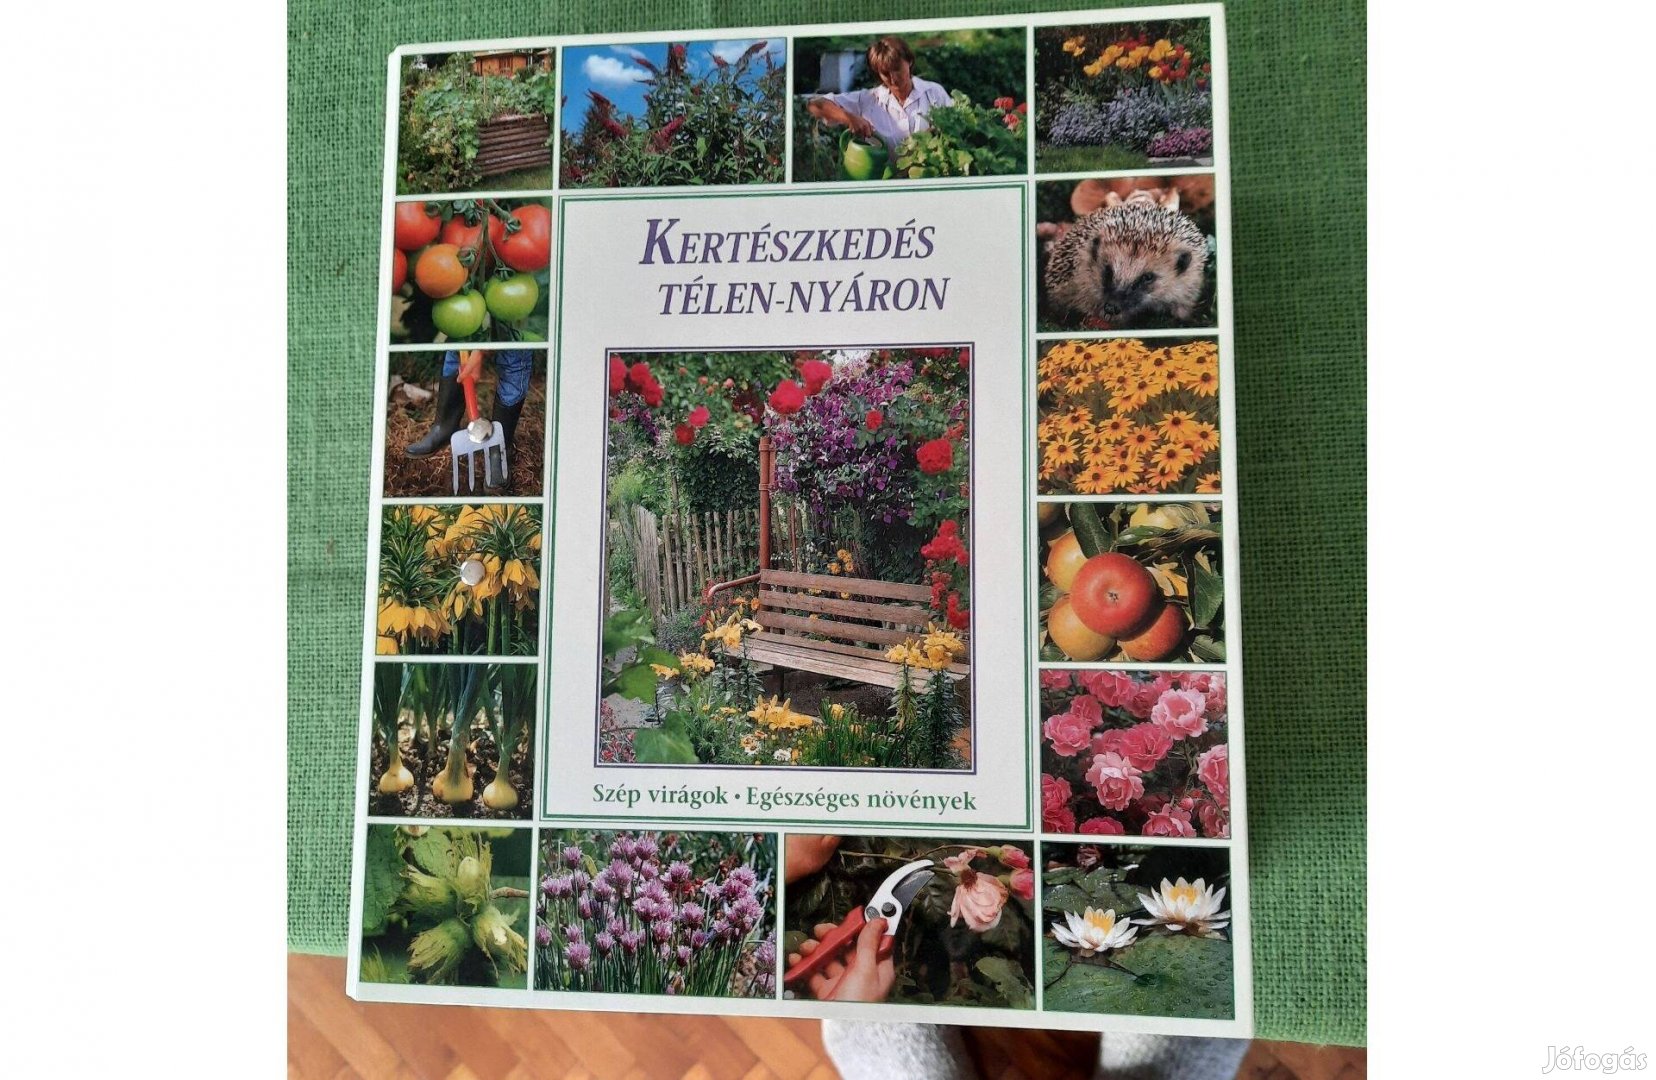 Kertészkedés télen nyáron könyv katalógus eladó 2.000.-Ft